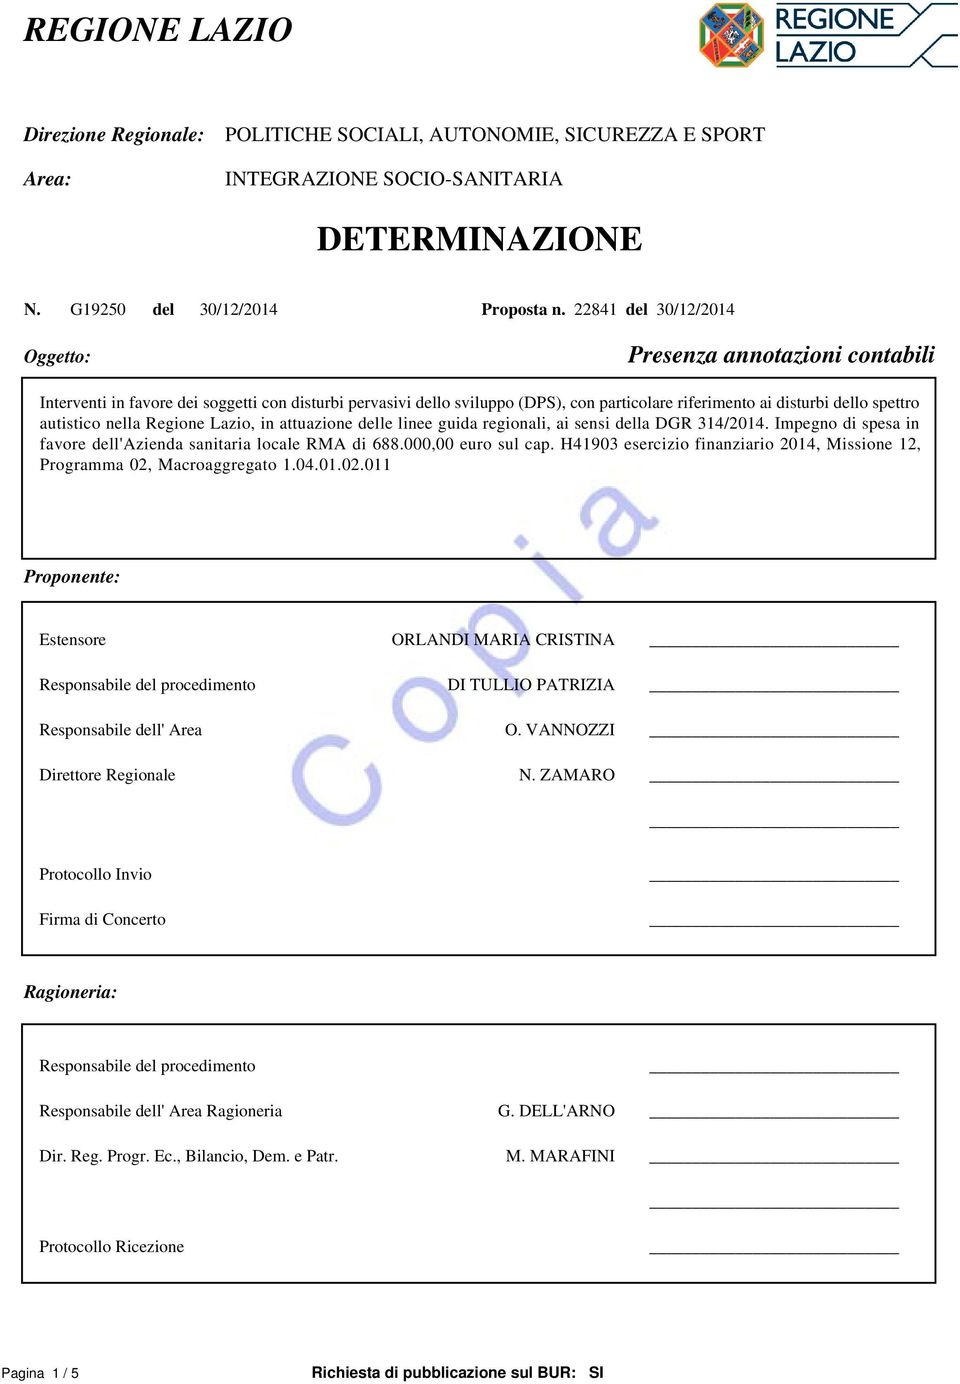 autistico nella Regione Lazio, in attuazione delle linee guida regionali, ai sensi della DGR 314/2014. Impegno di spesa in favore dell'azienda sanitaria locale RMA di 688.000,00 euro sul cap.